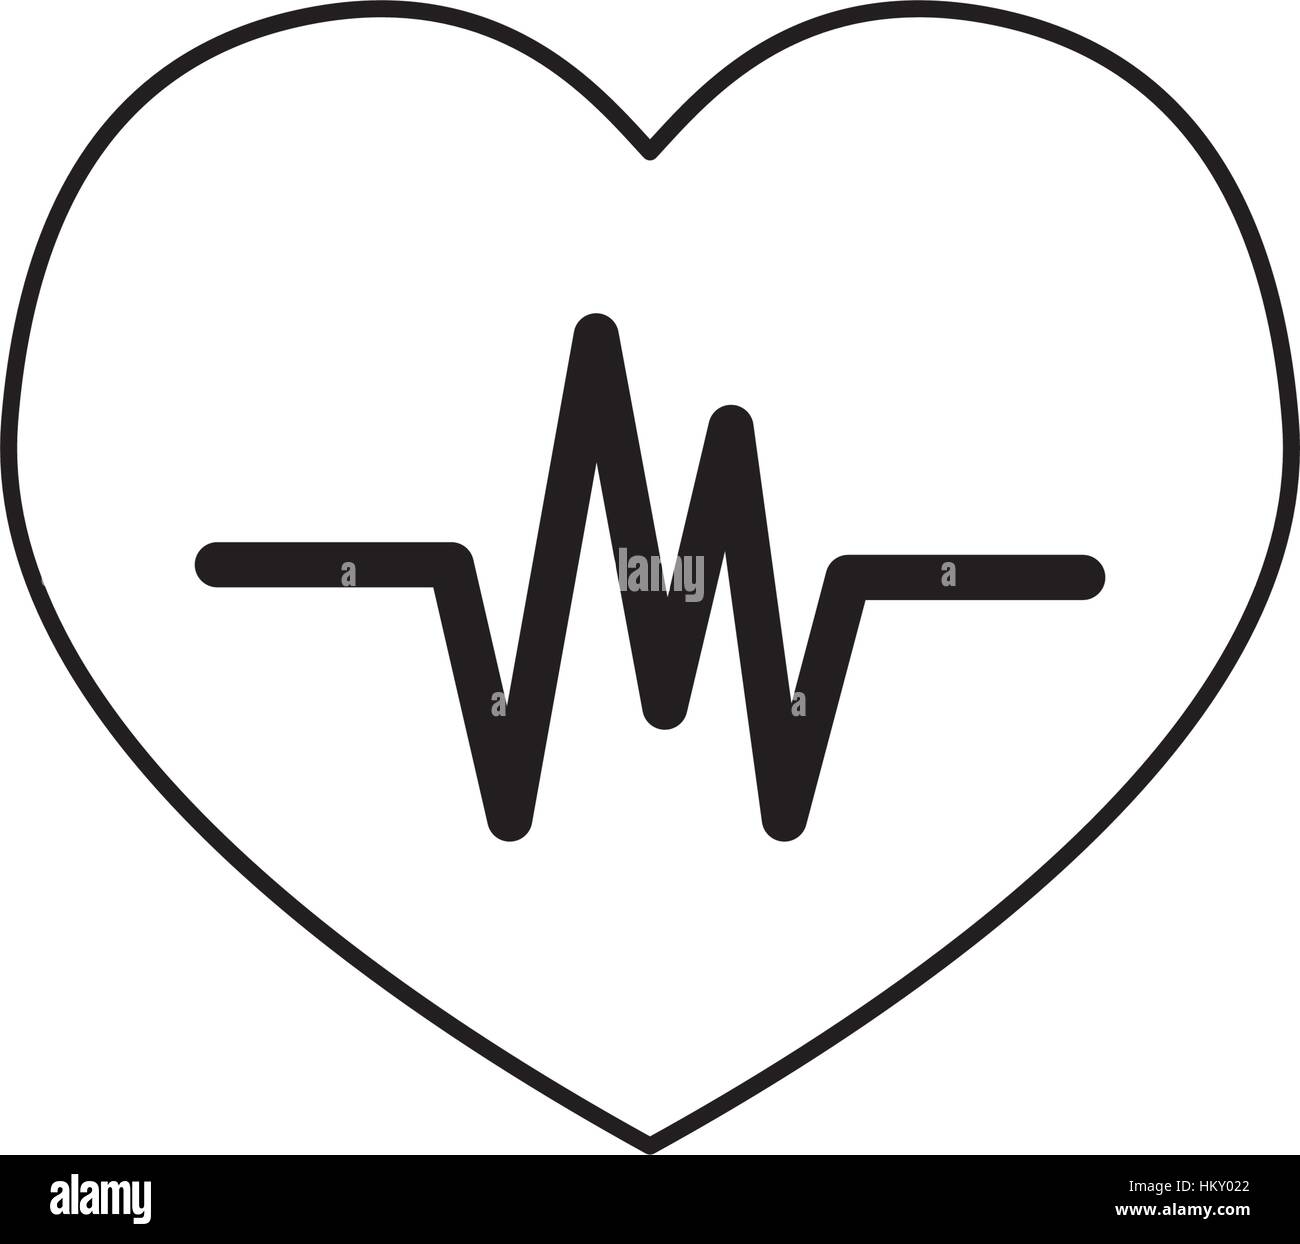 Heartbeat cardio symbol icon vector illustration graphic design Stock ...